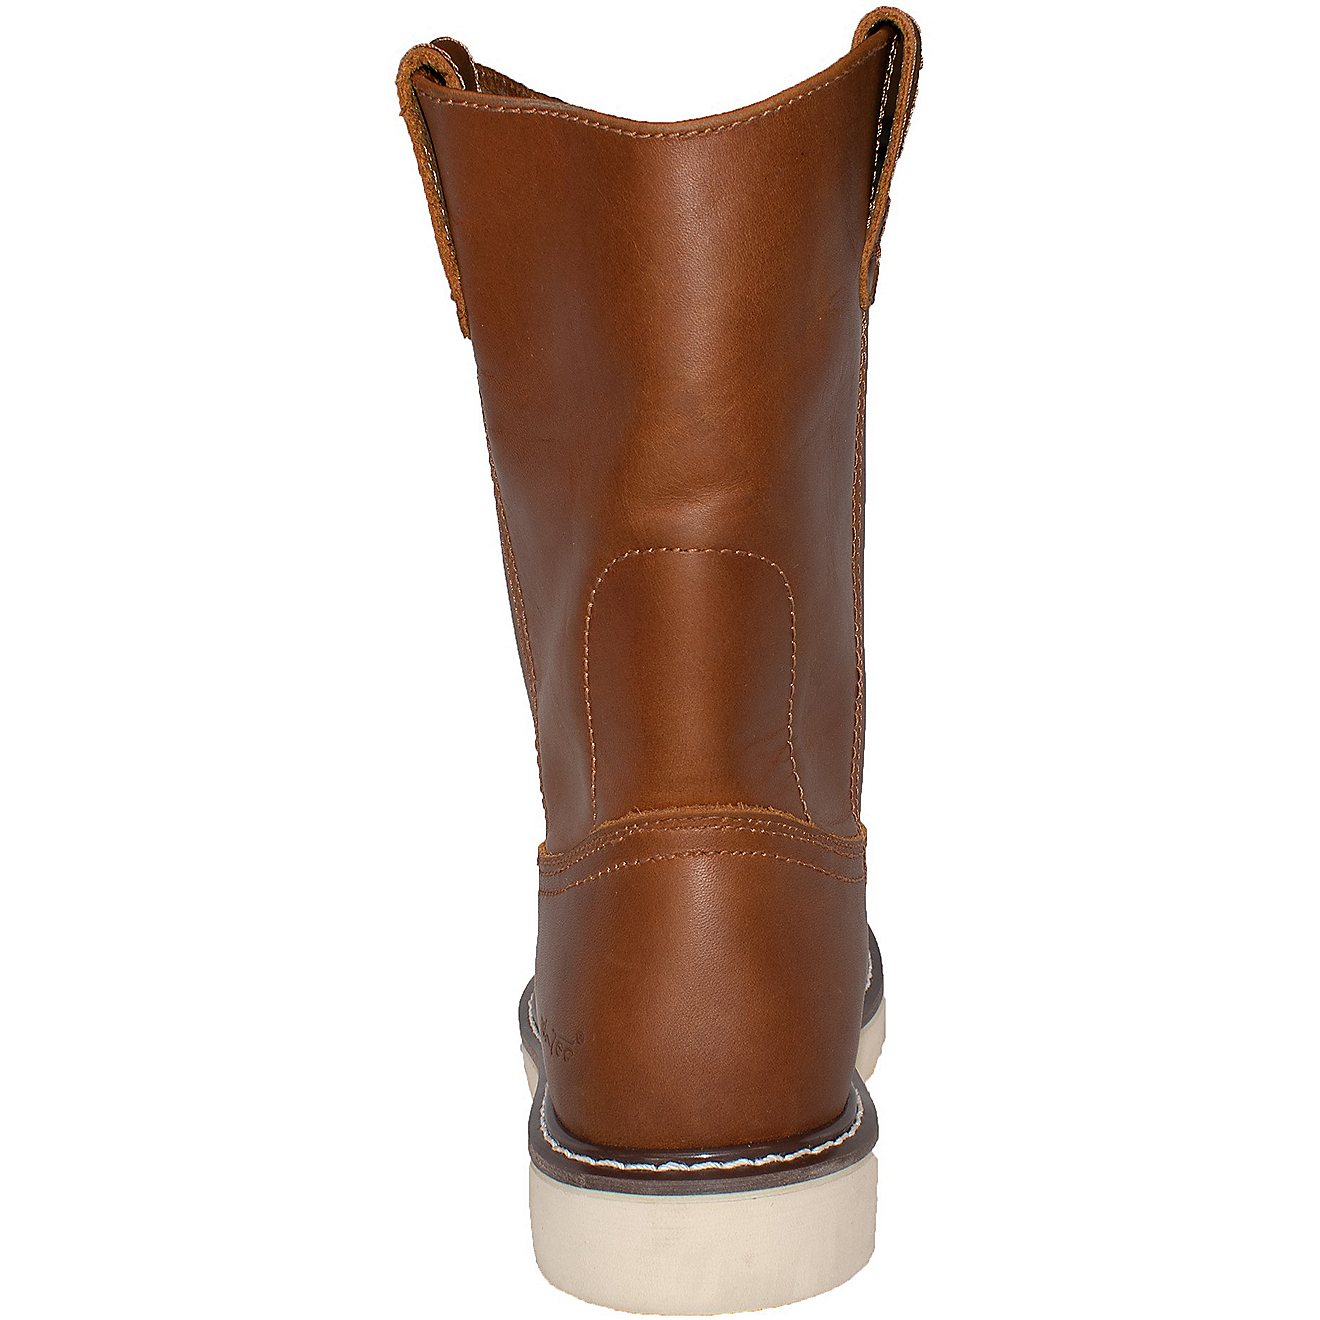 AdTec Men's 8 in Side Zipper Composite Toe Wellington Boots                                                                      - view number 4